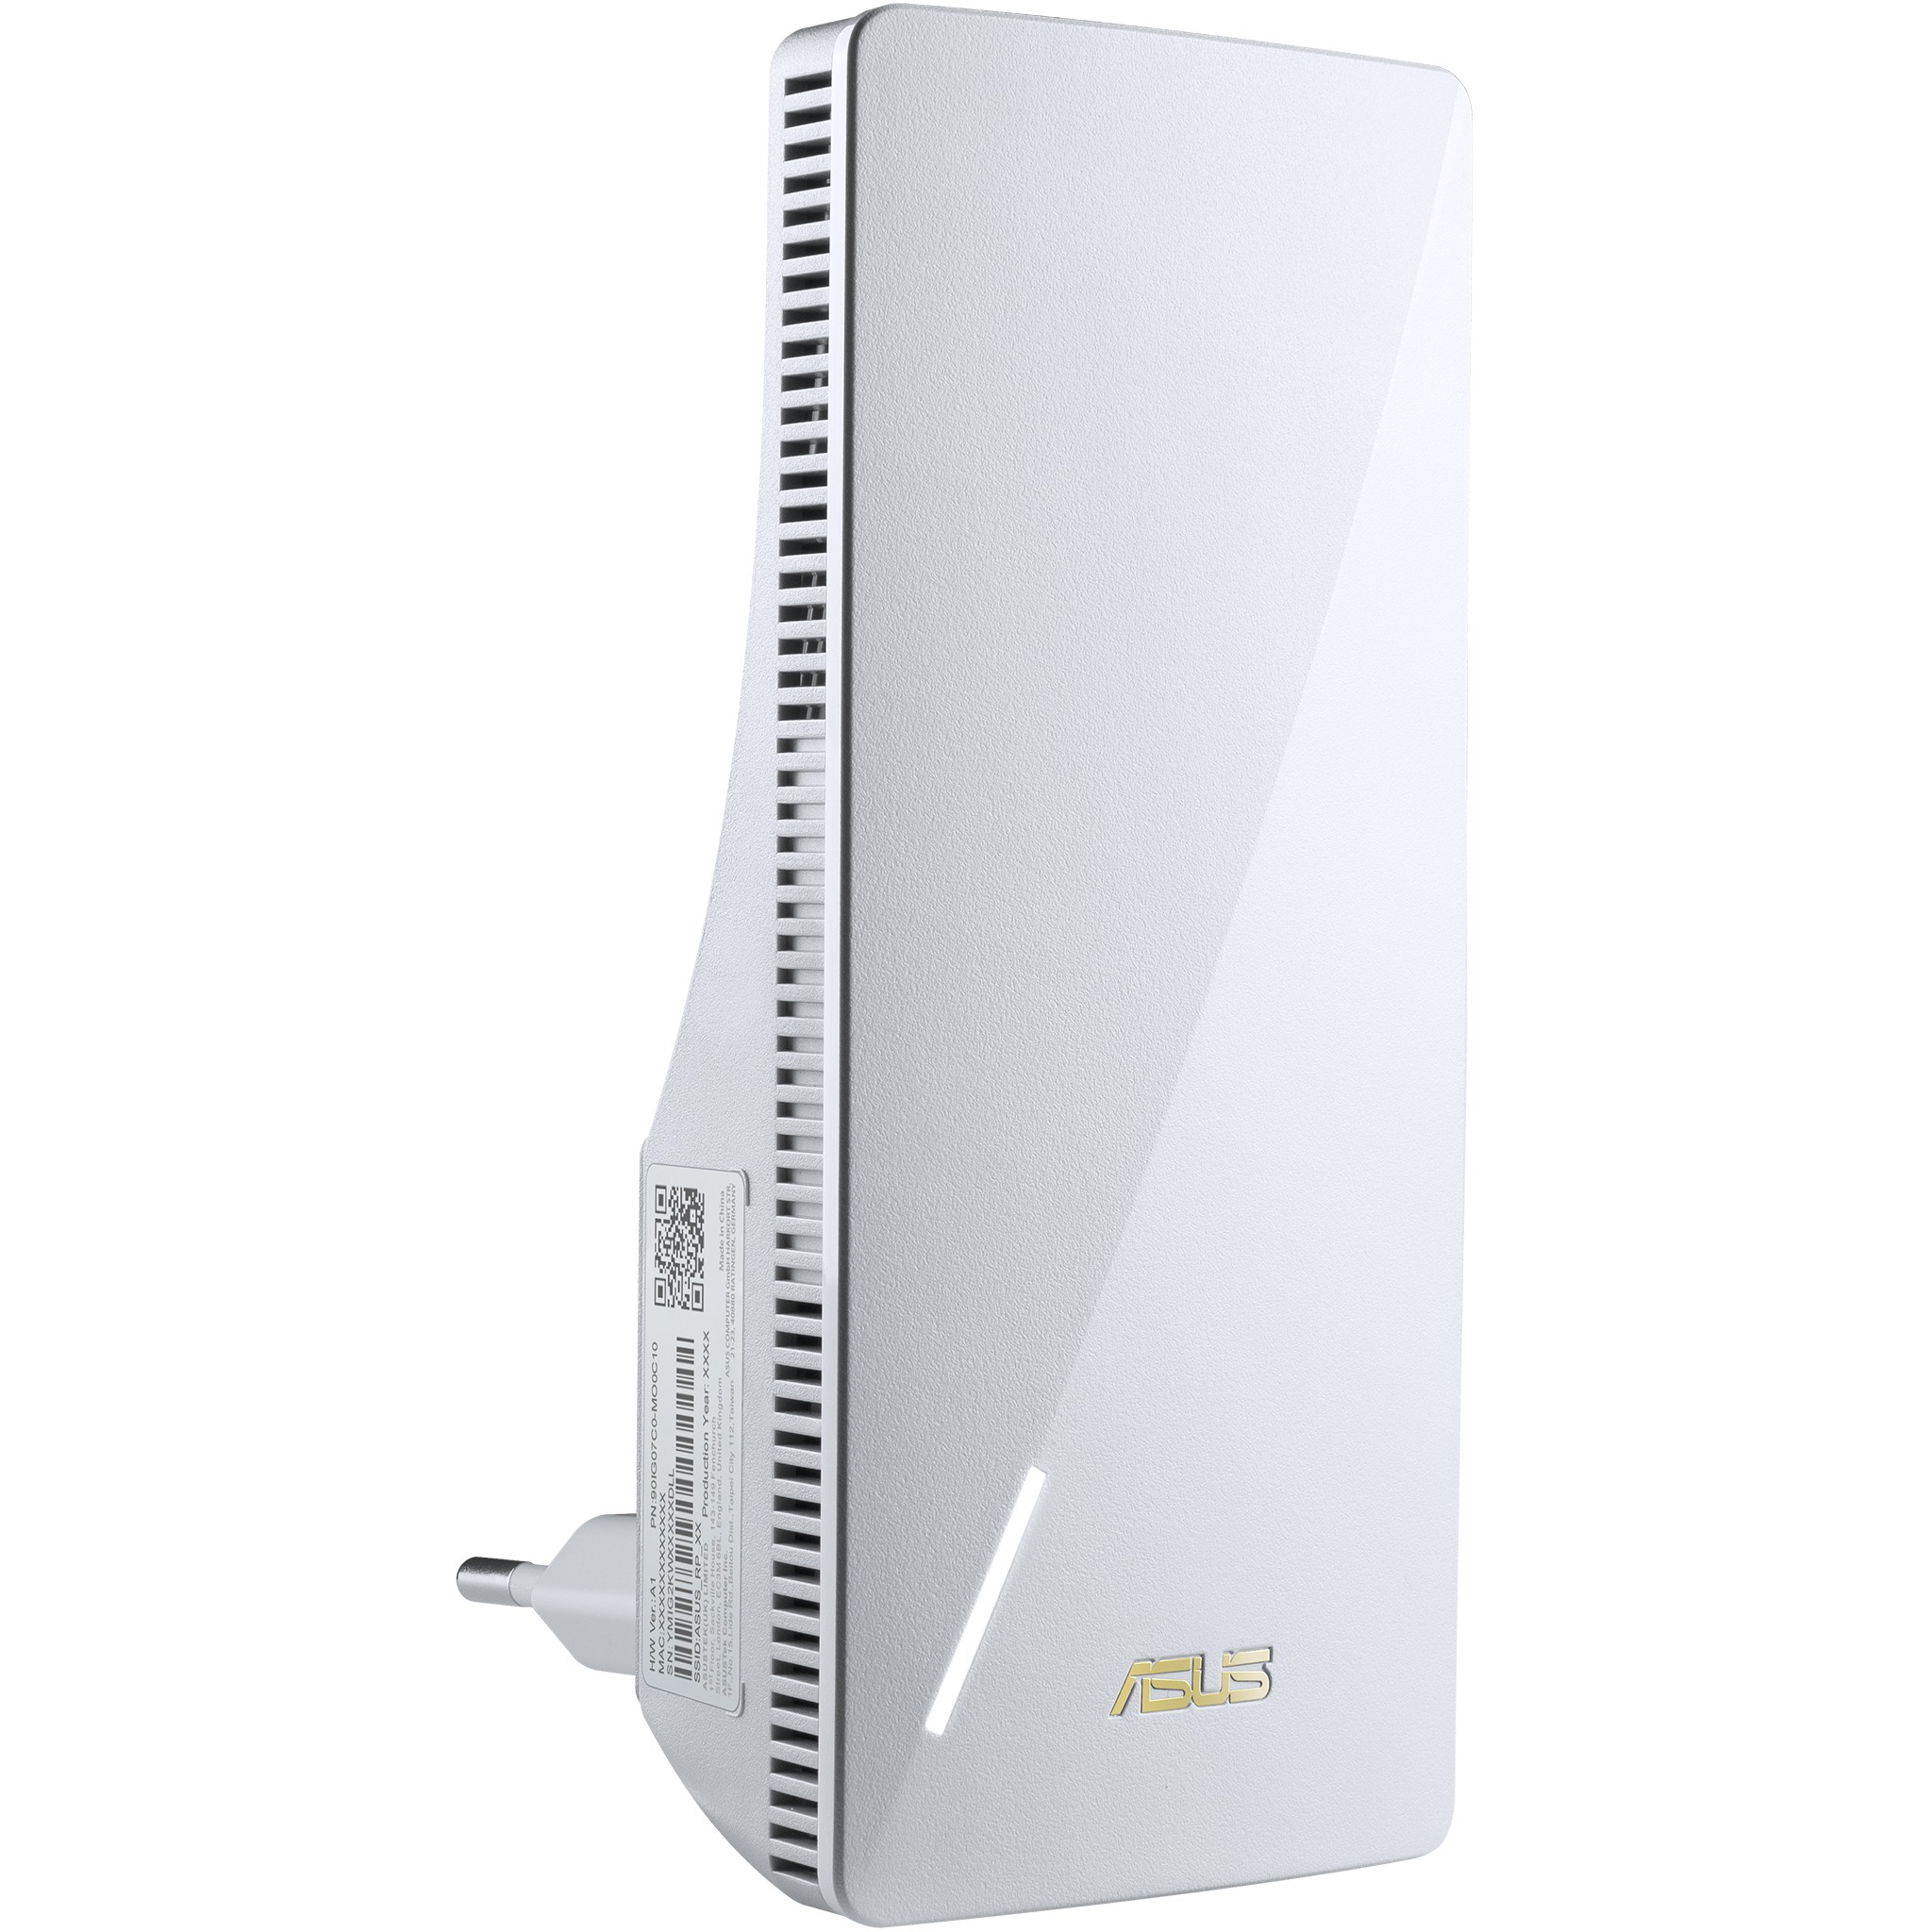 ASUS RP-AX58 Netzwerksender Weiß 10, 100, 1000 Mbit/s